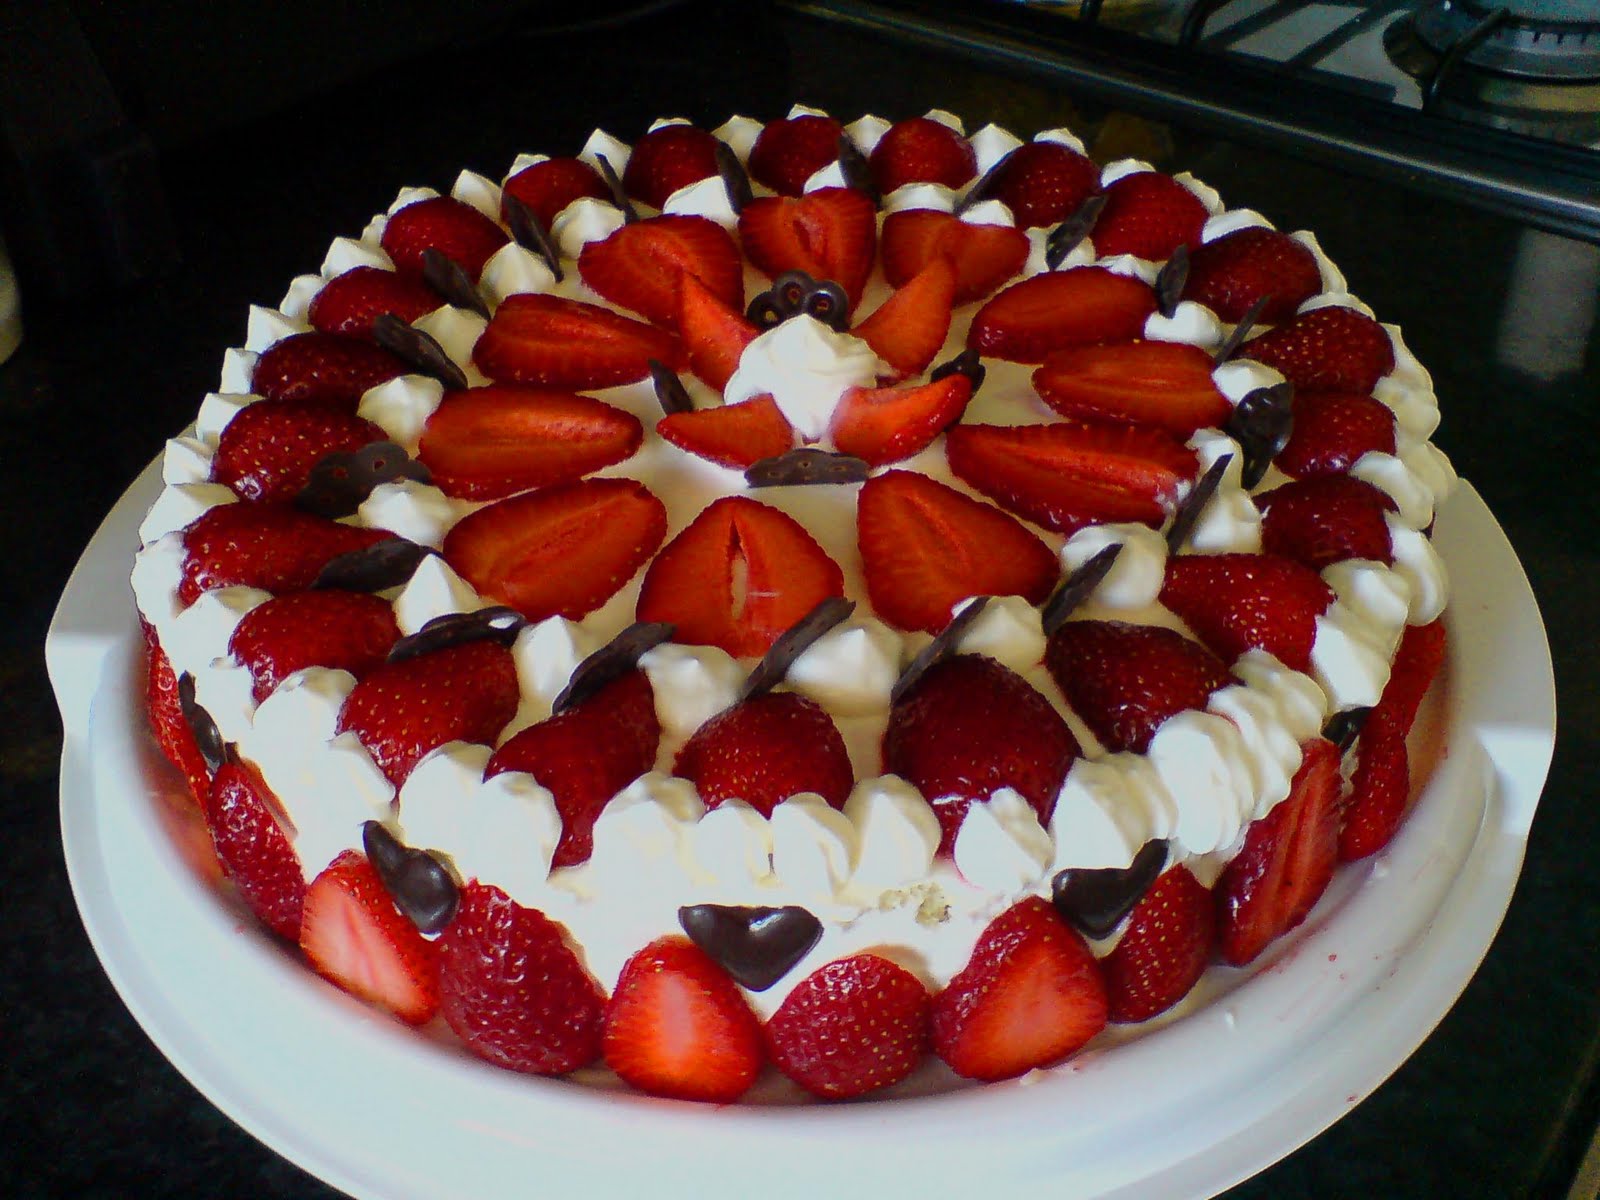 украсить торт фруктами и ягодами